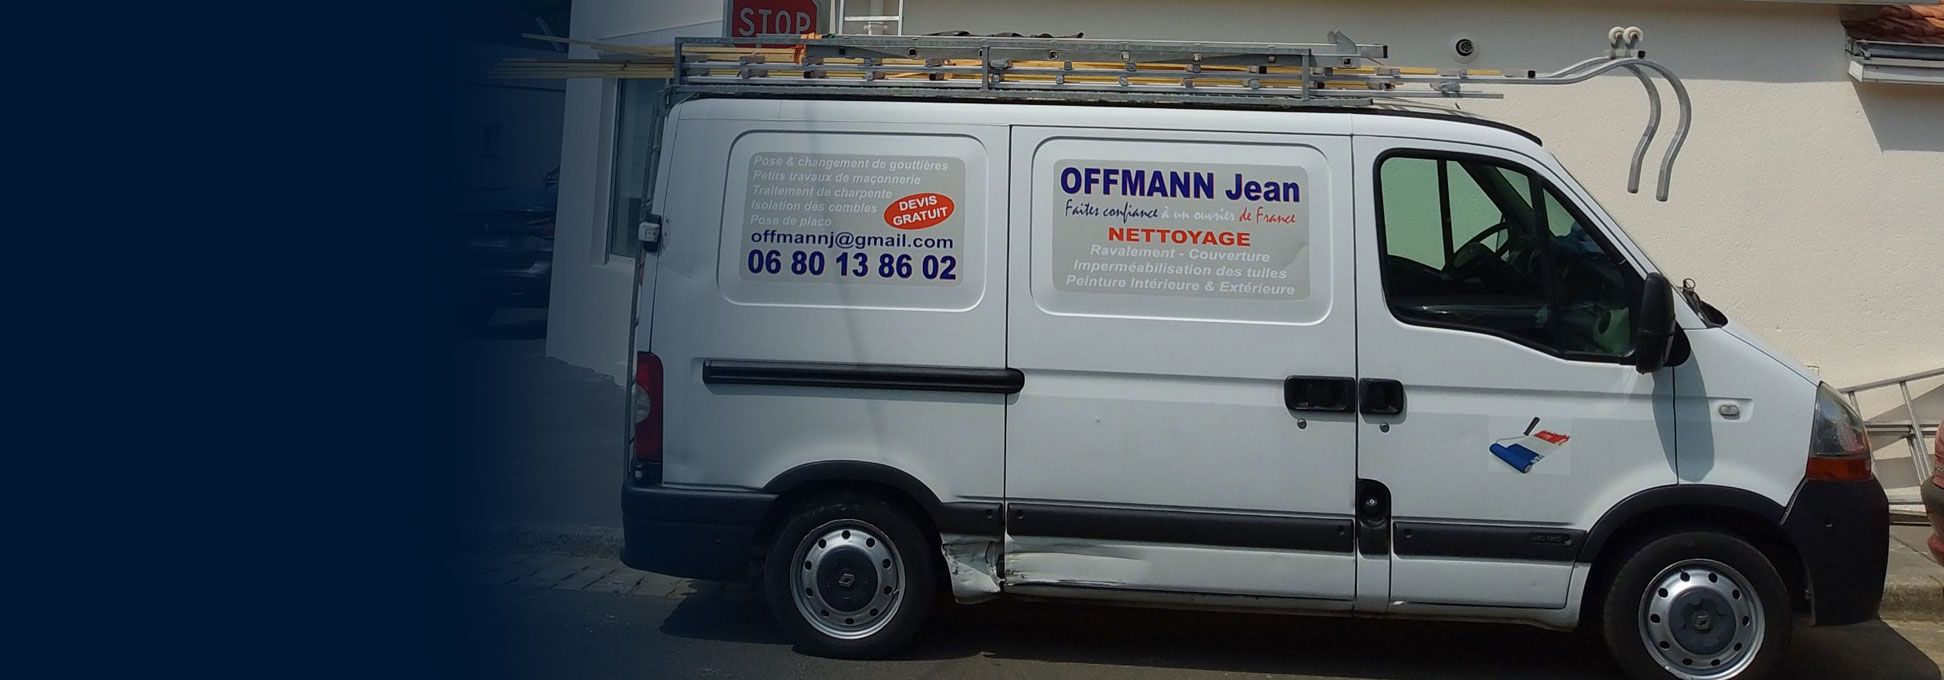 Offmann Jean